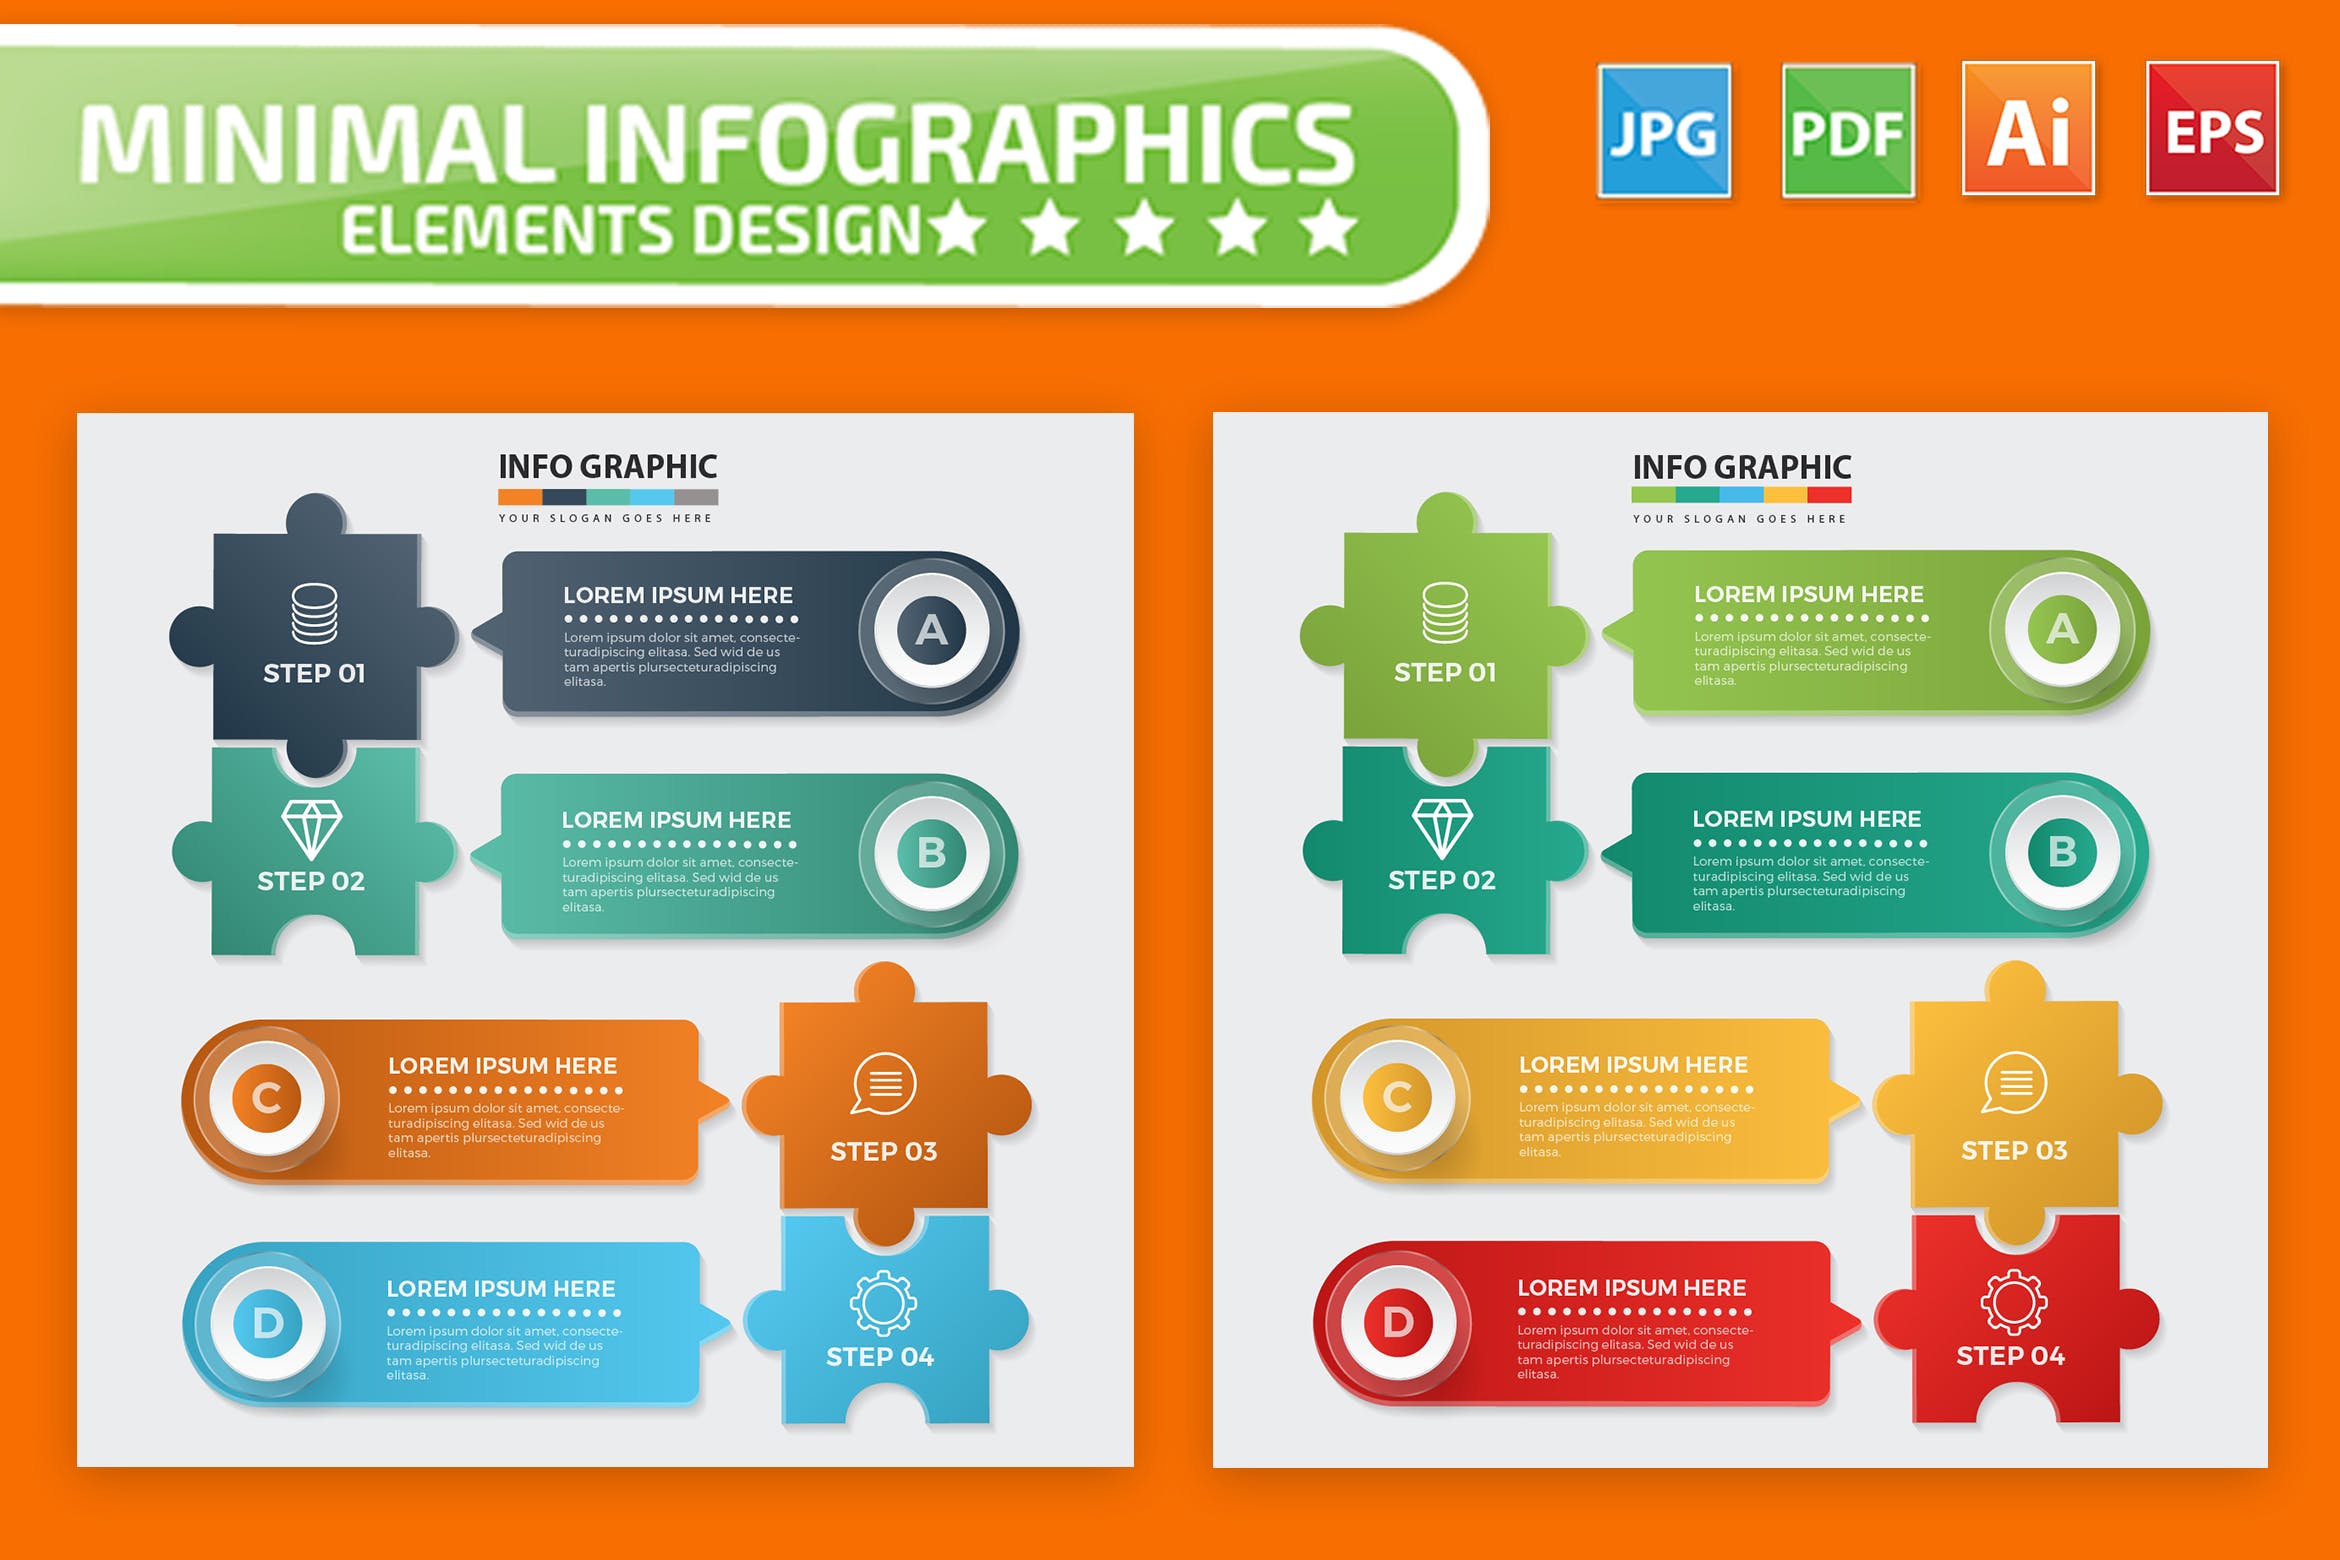 拼图风格流程步骤信息图表设计矢量图形素材 Puzzle Infographic Elements Design插图